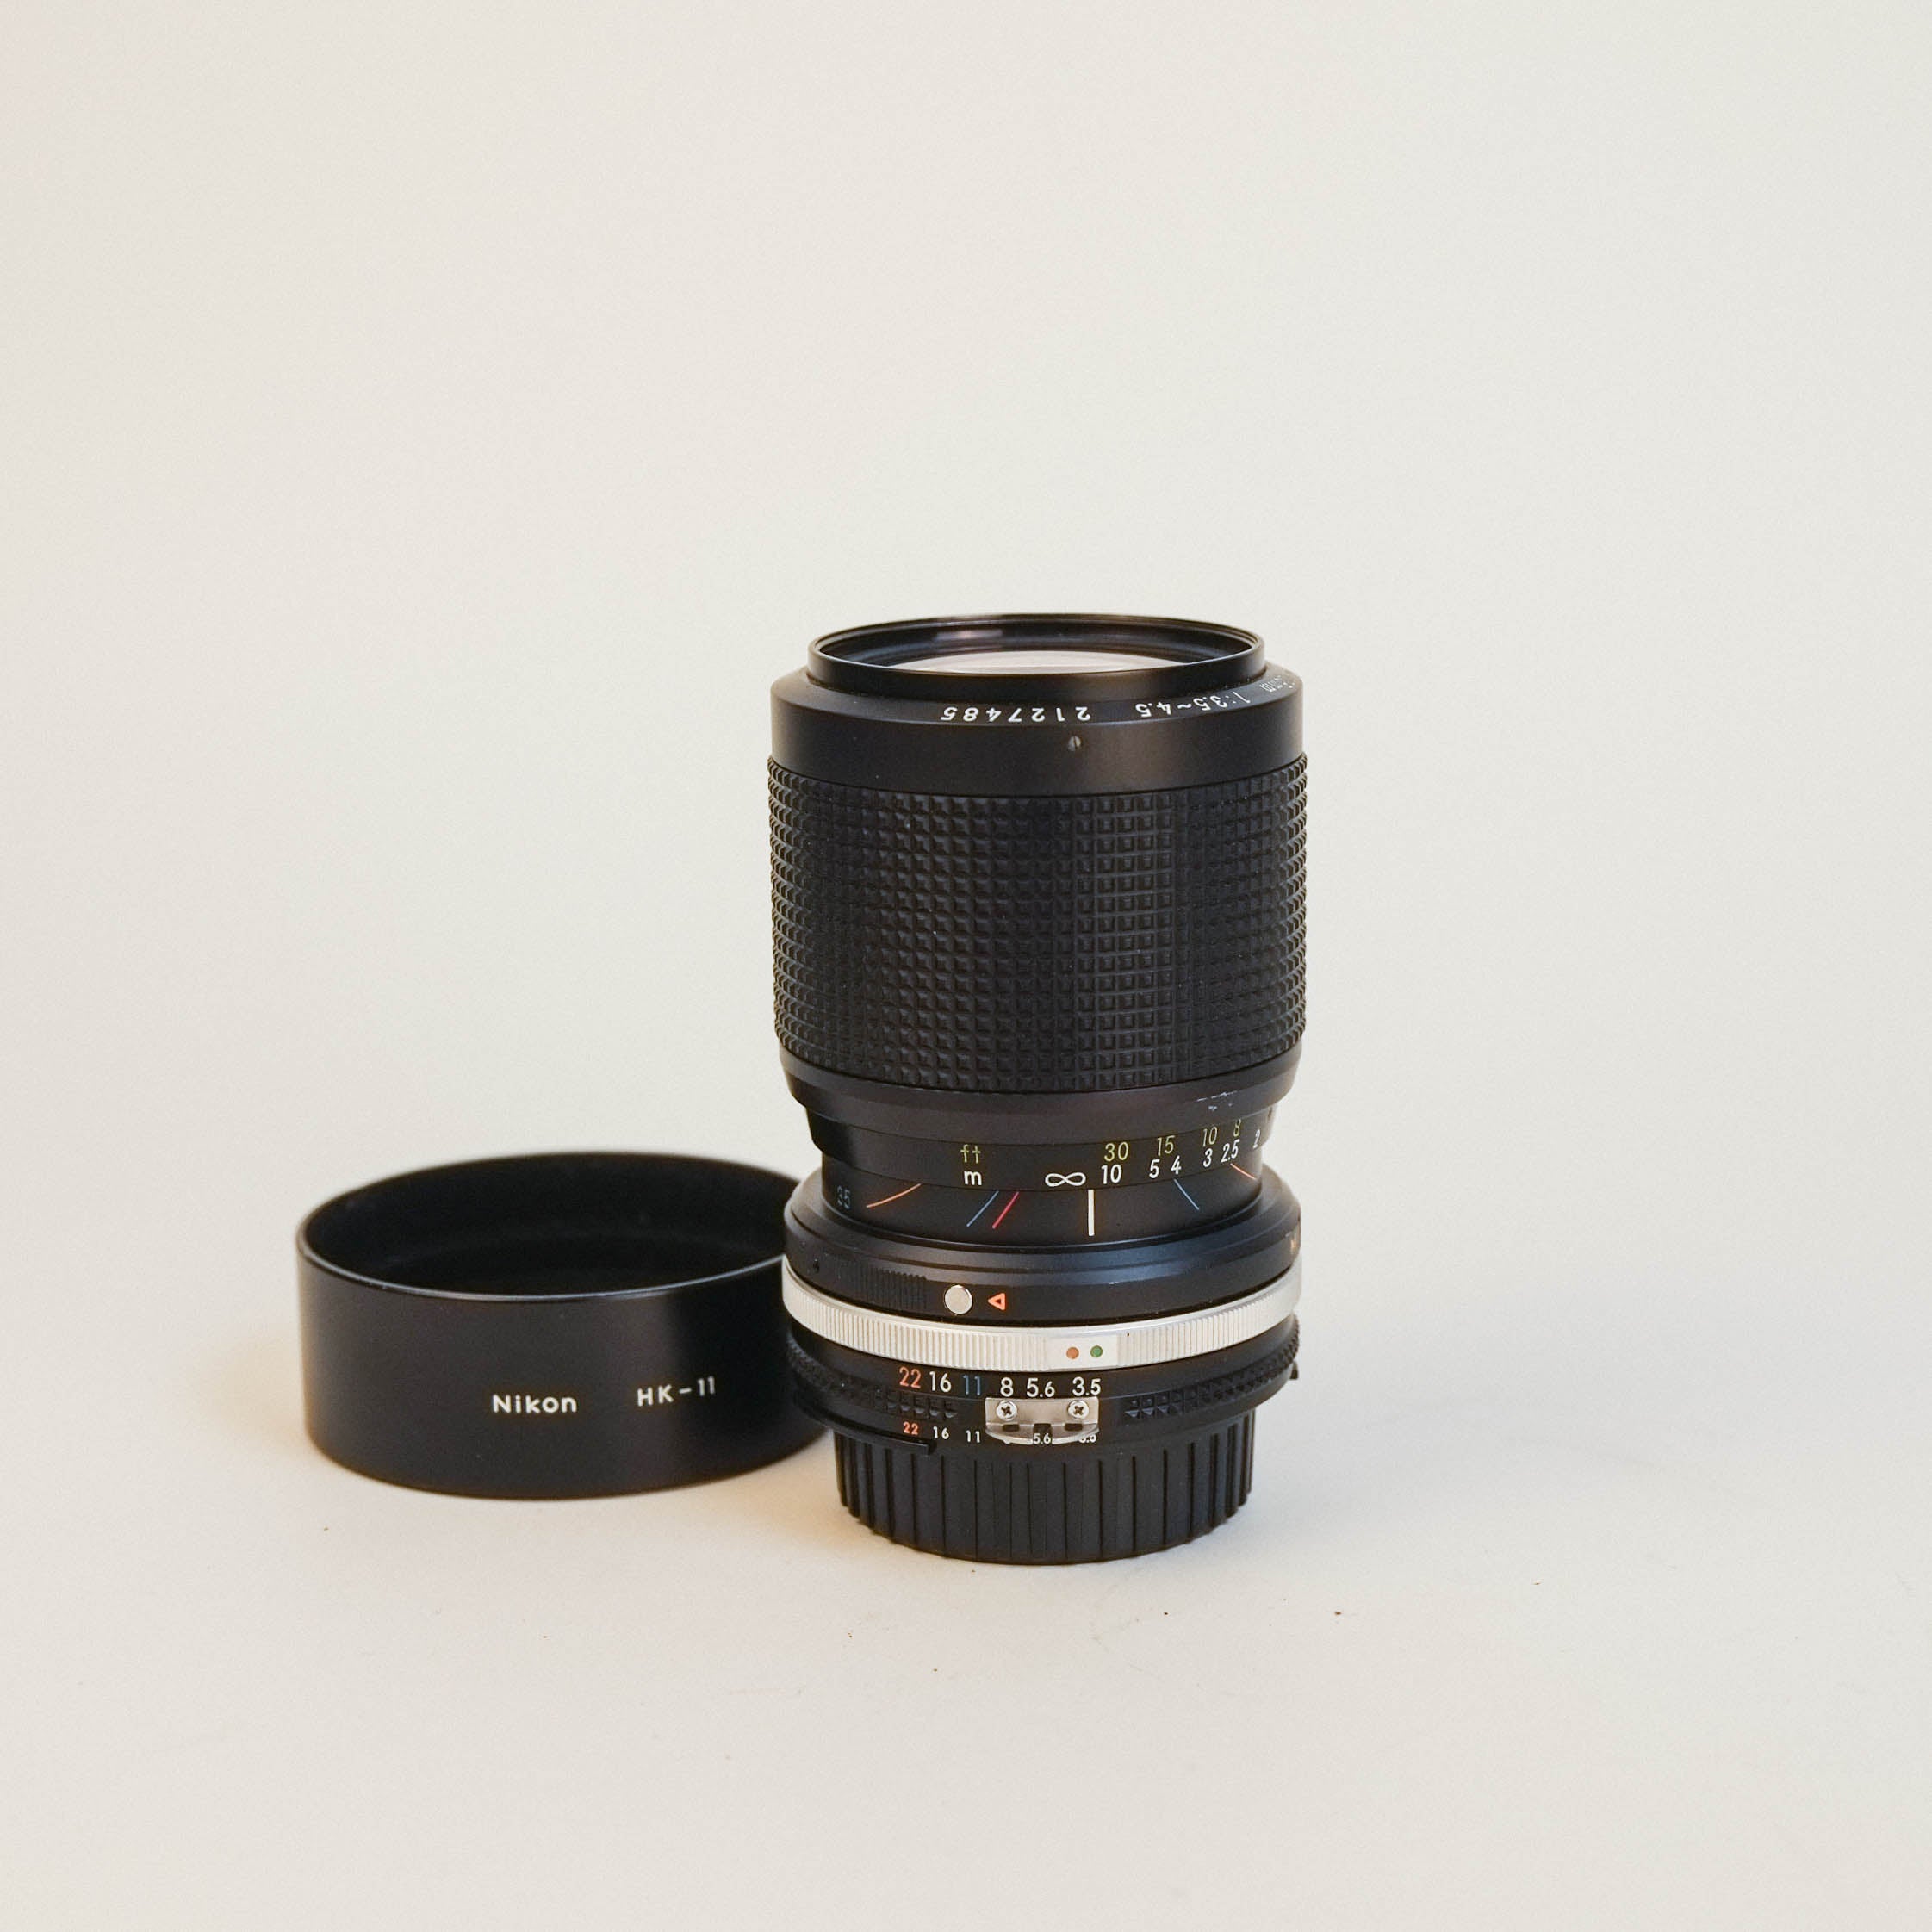 Nikon Zoom-Nikkor 35-105mm f3.5-4.5 Ai-s + NIkon HK-11 Lens Hood